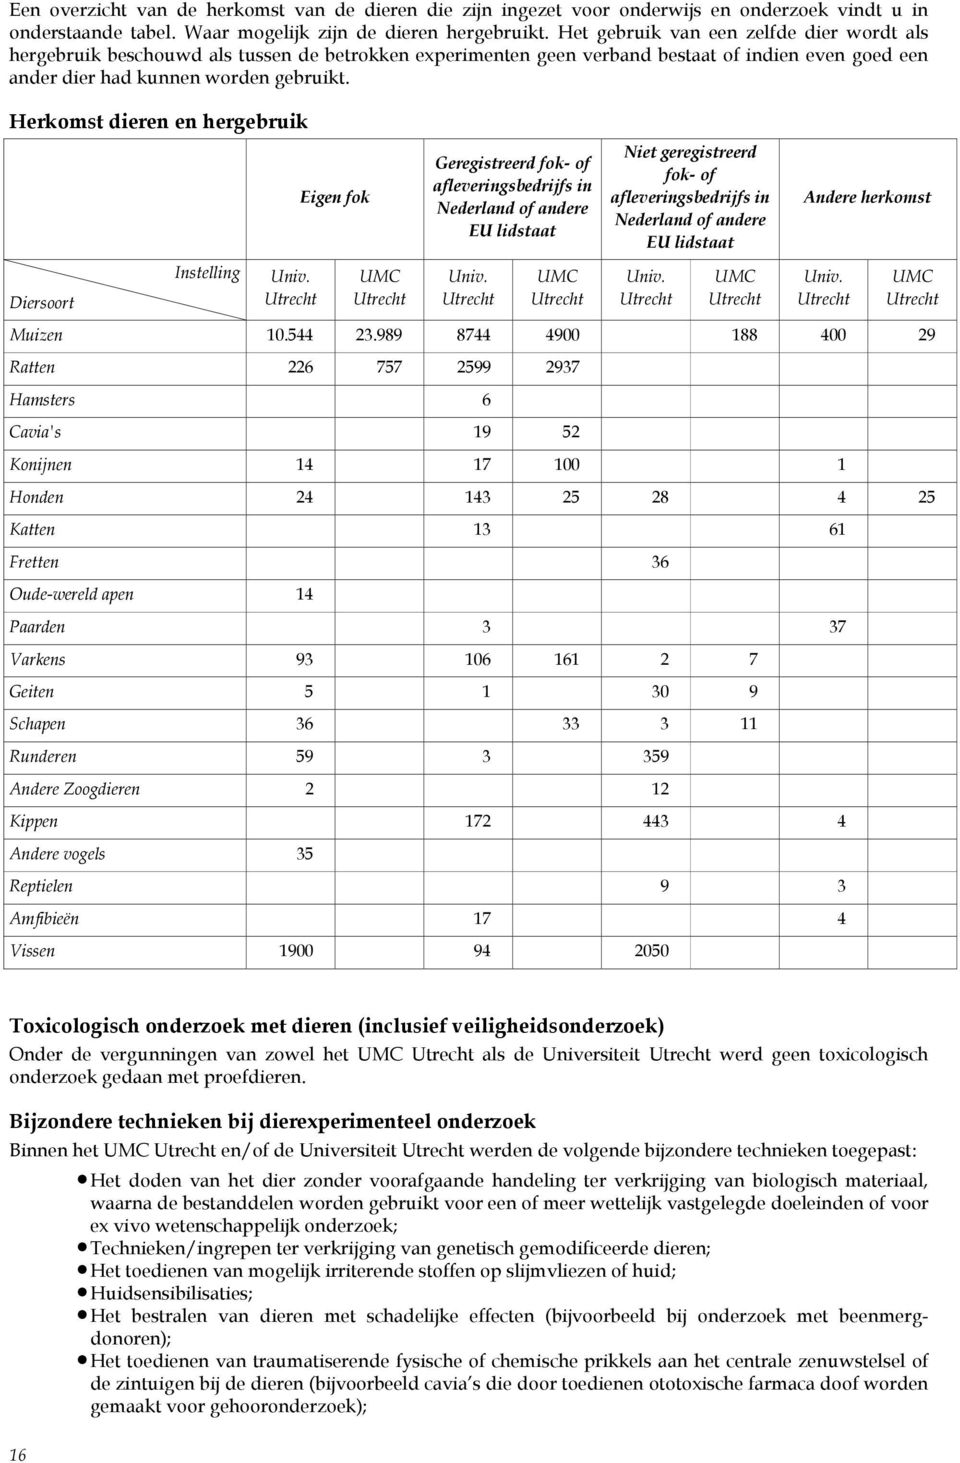 Herkomst dieren en hergebruik Eigen fok Geregistreerd fok- of afleveringsbedrijfs in Nederland of andere EU lidstaat Niet geregistreerd fok- of afleveringsbedrijfs in Nederland of andere EU lidstaat